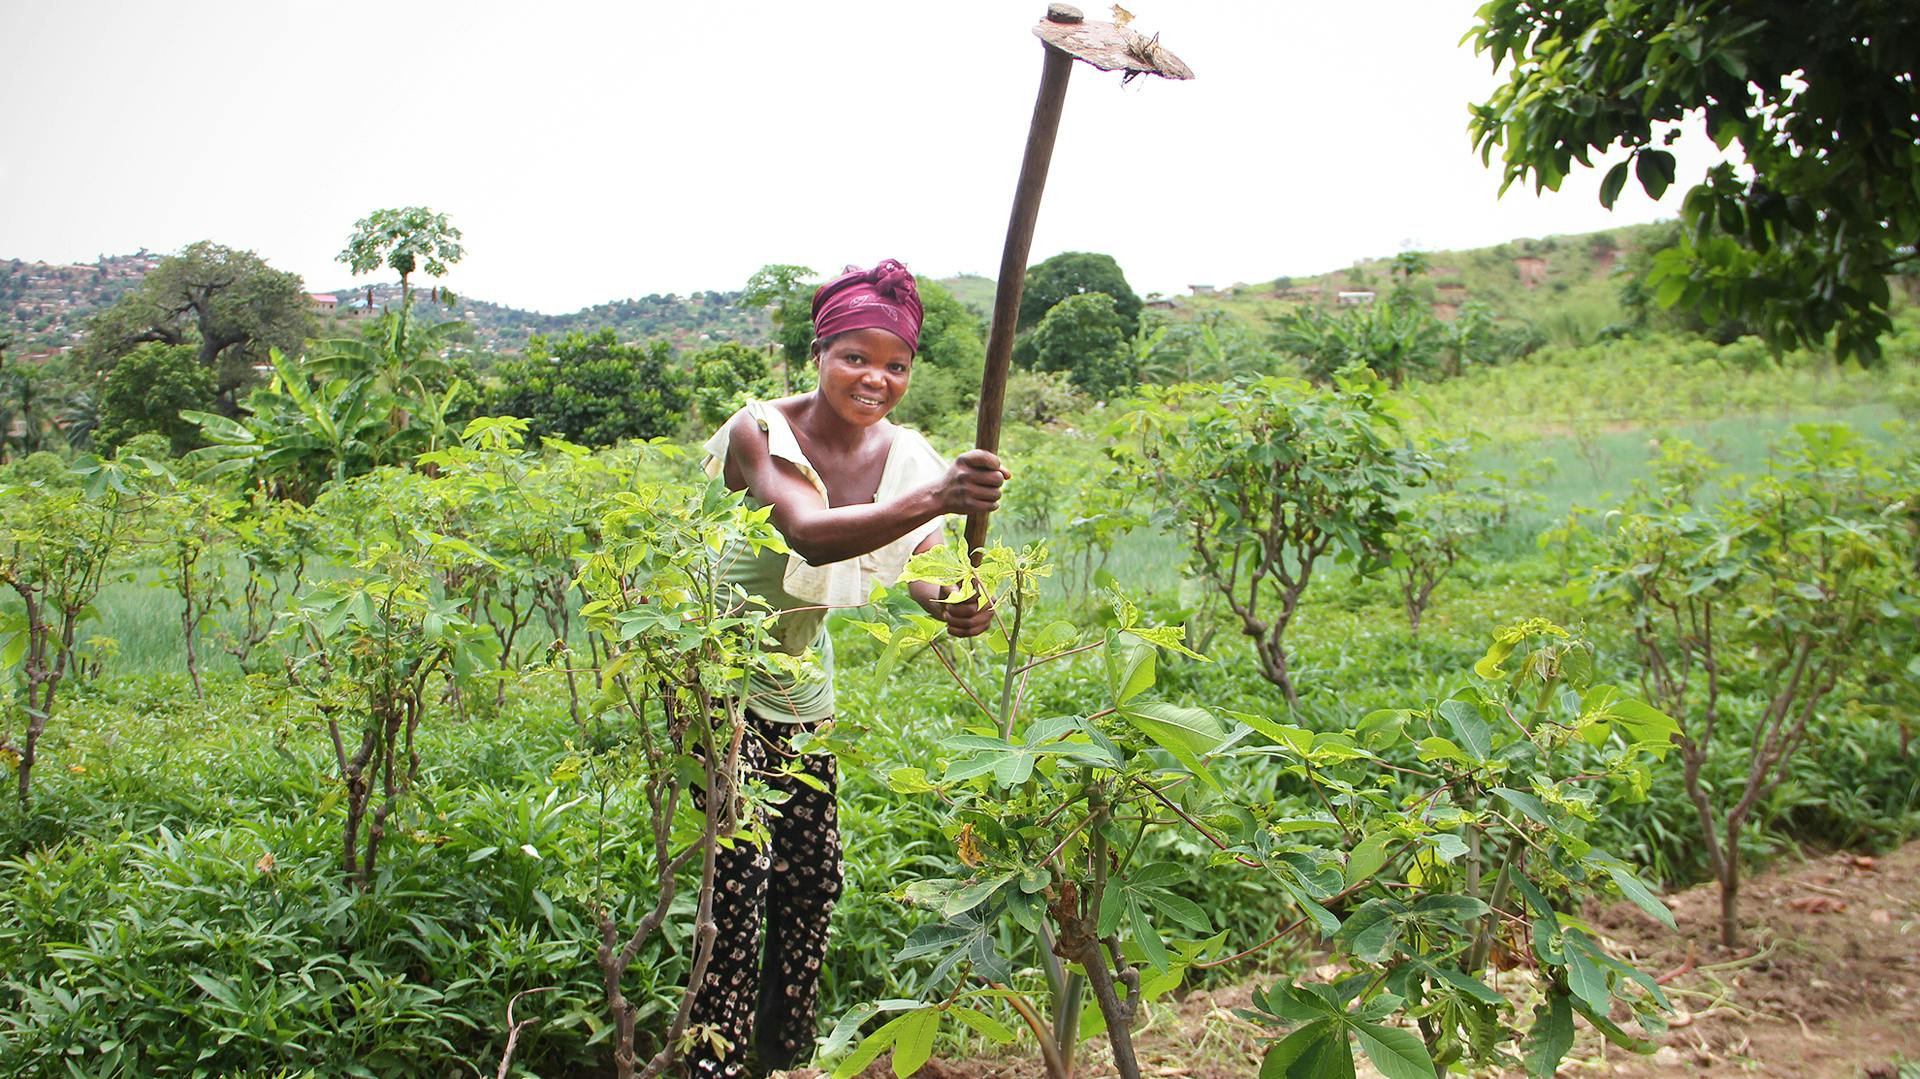 En kvinna med en hacka på en åker med växtlighet.